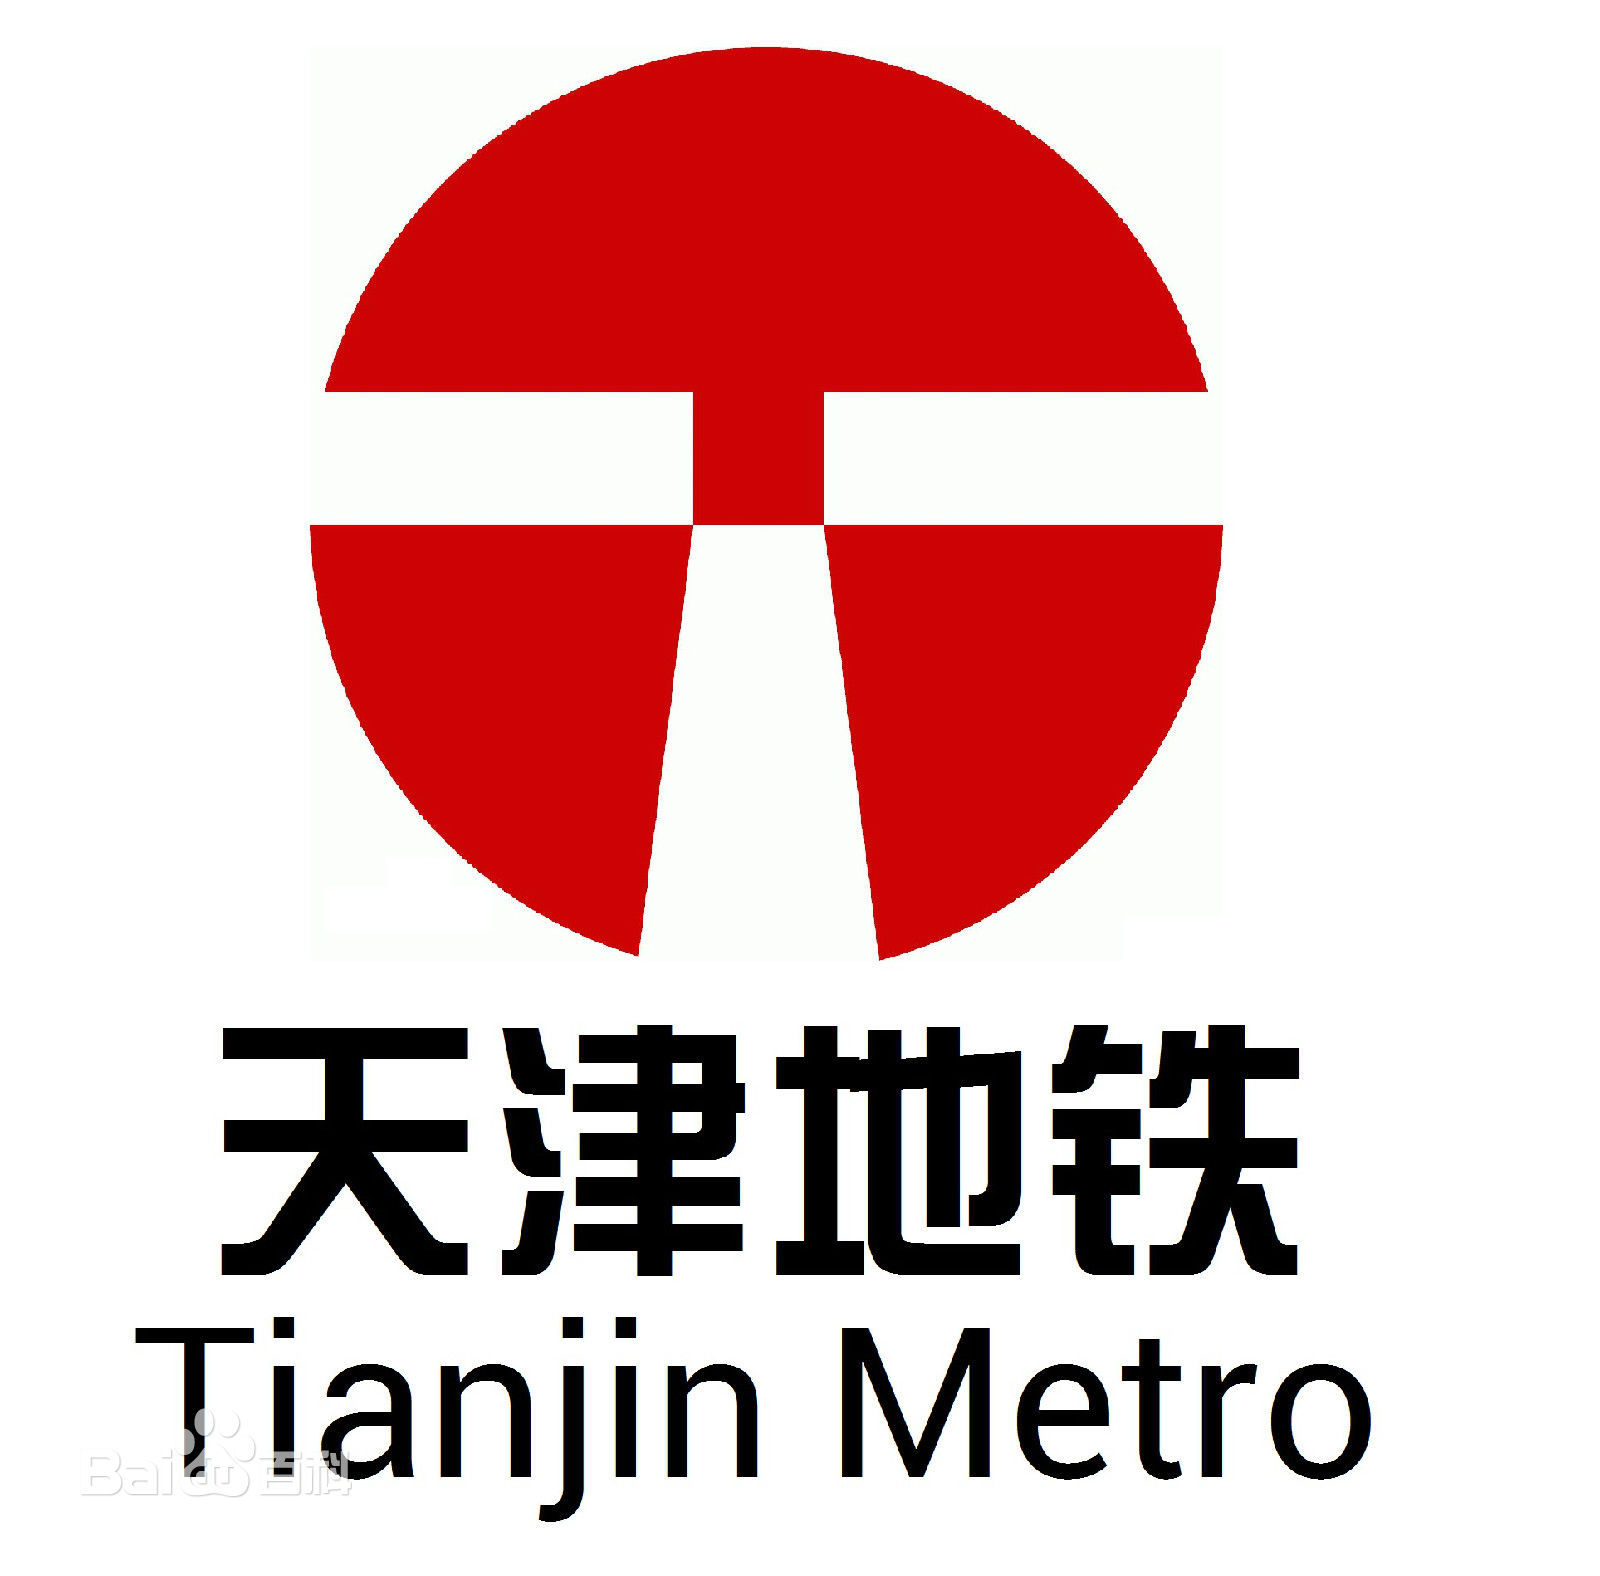 中国46座城市地铁标志及含义 - 哔哩哔哩